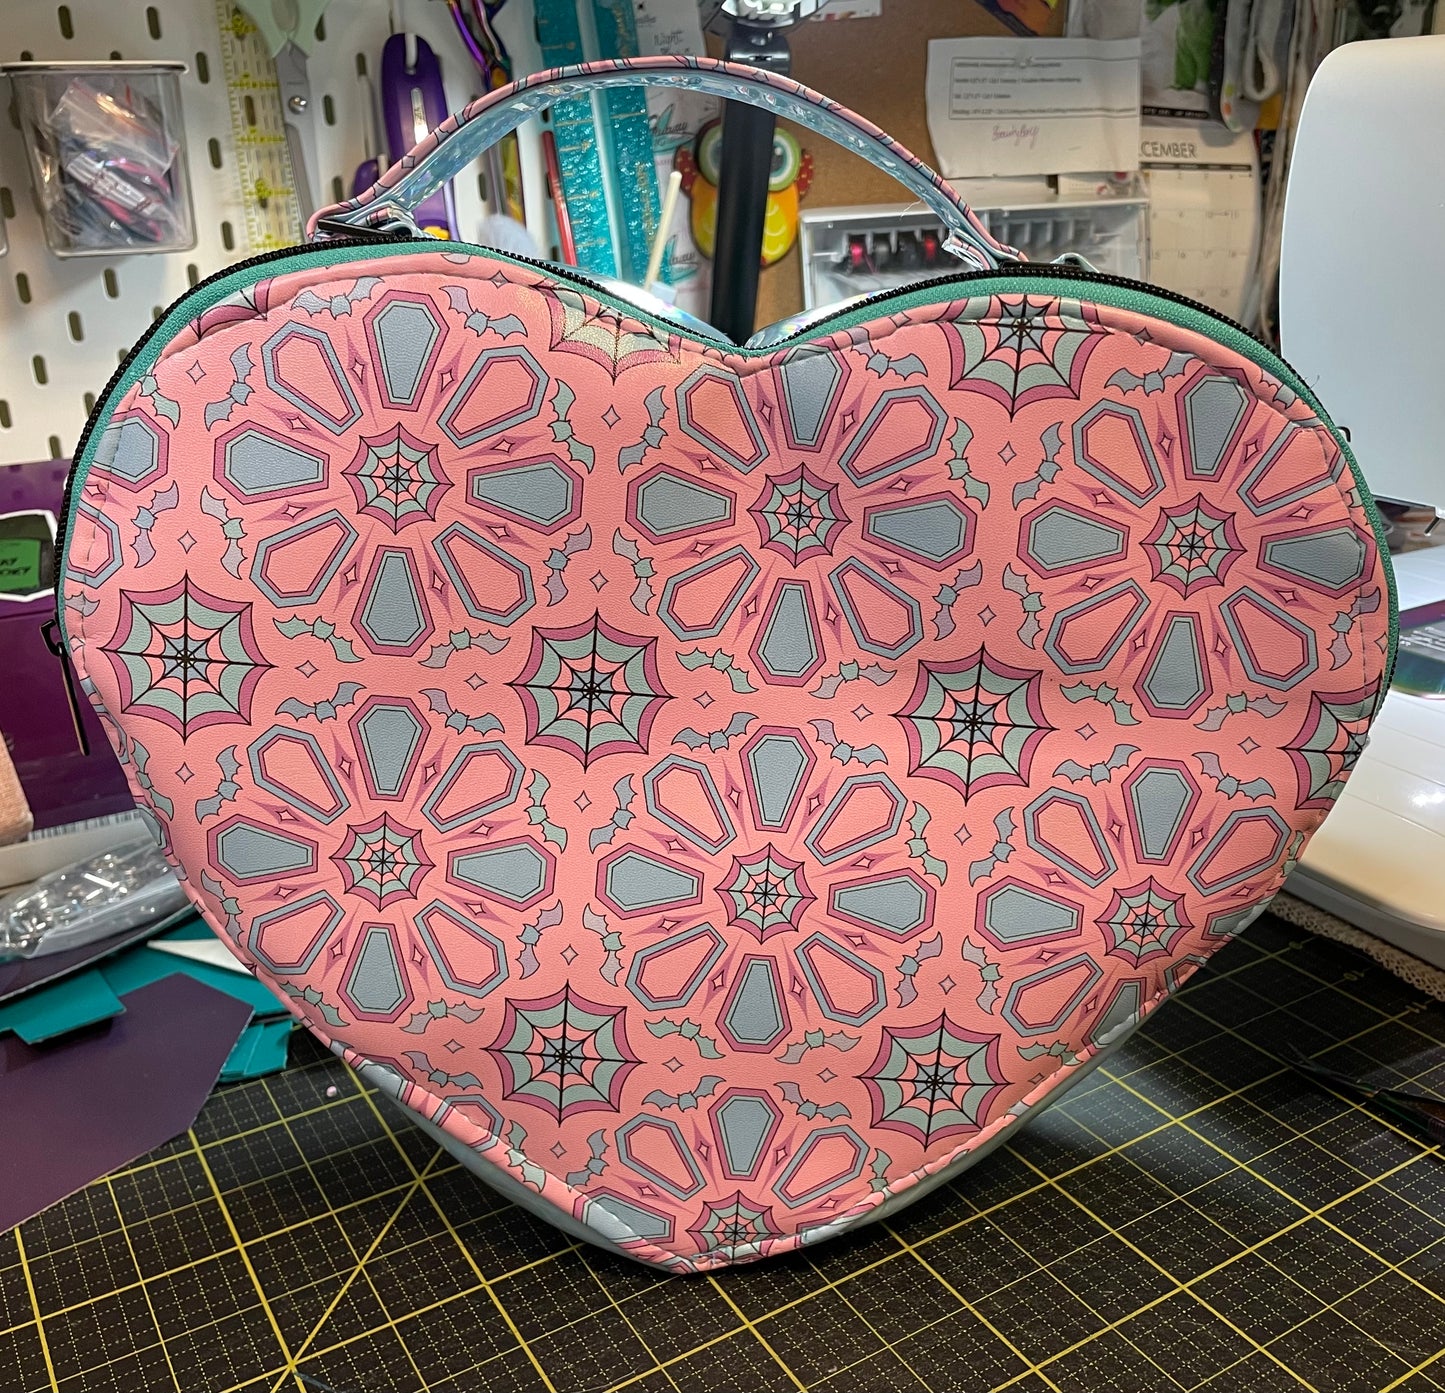 Creepy Cute Heart Bag